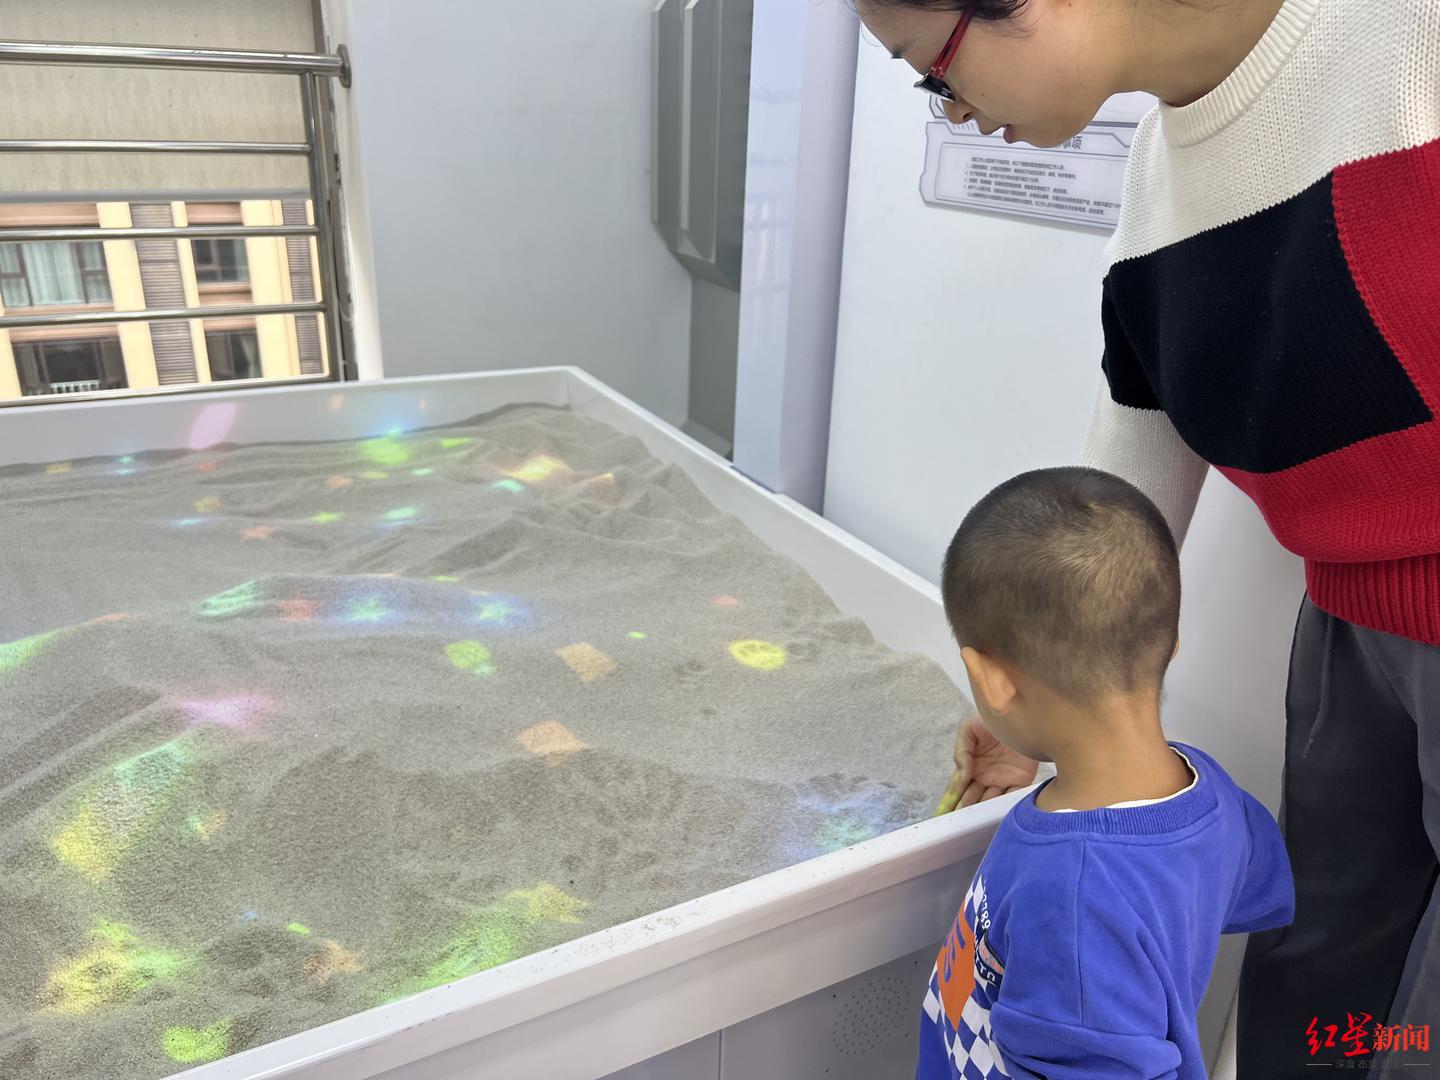 ▲在VR互动沙盘区域，吴女士正带着两岁半的儿子进行项目体验